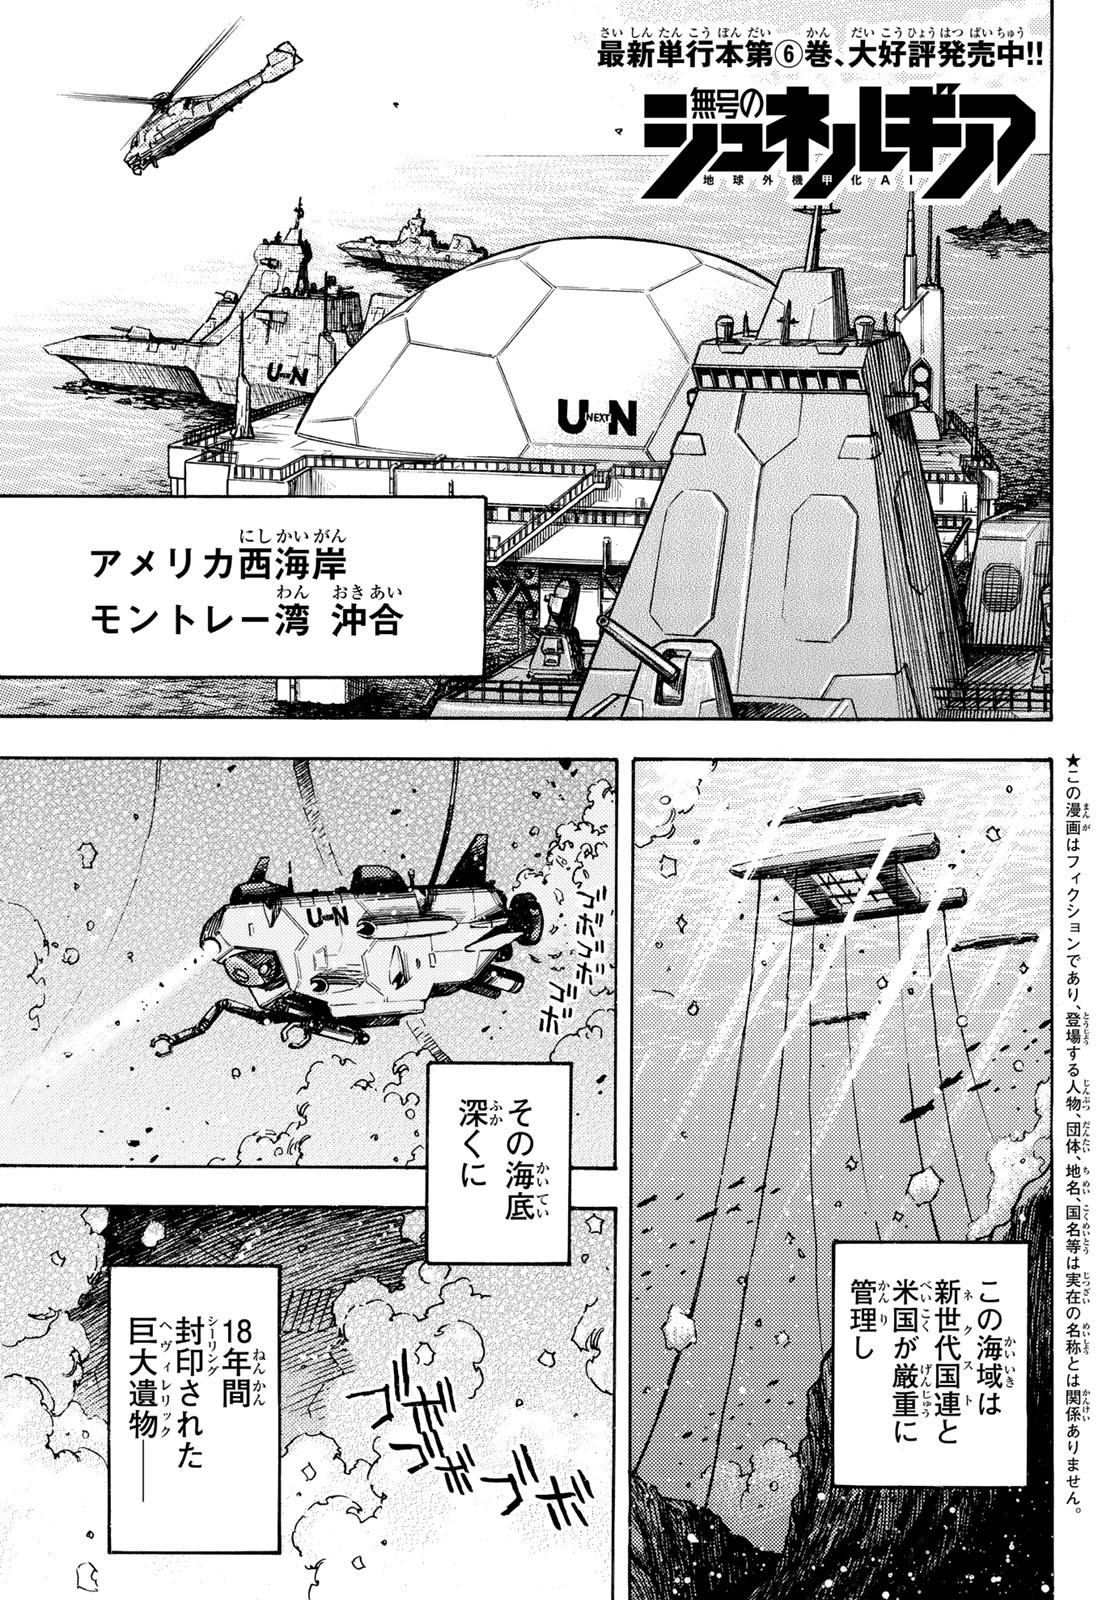 Mugou no Schnell Gear: Chikyuugai Kisouka AI - Chapter 43 - Page 1